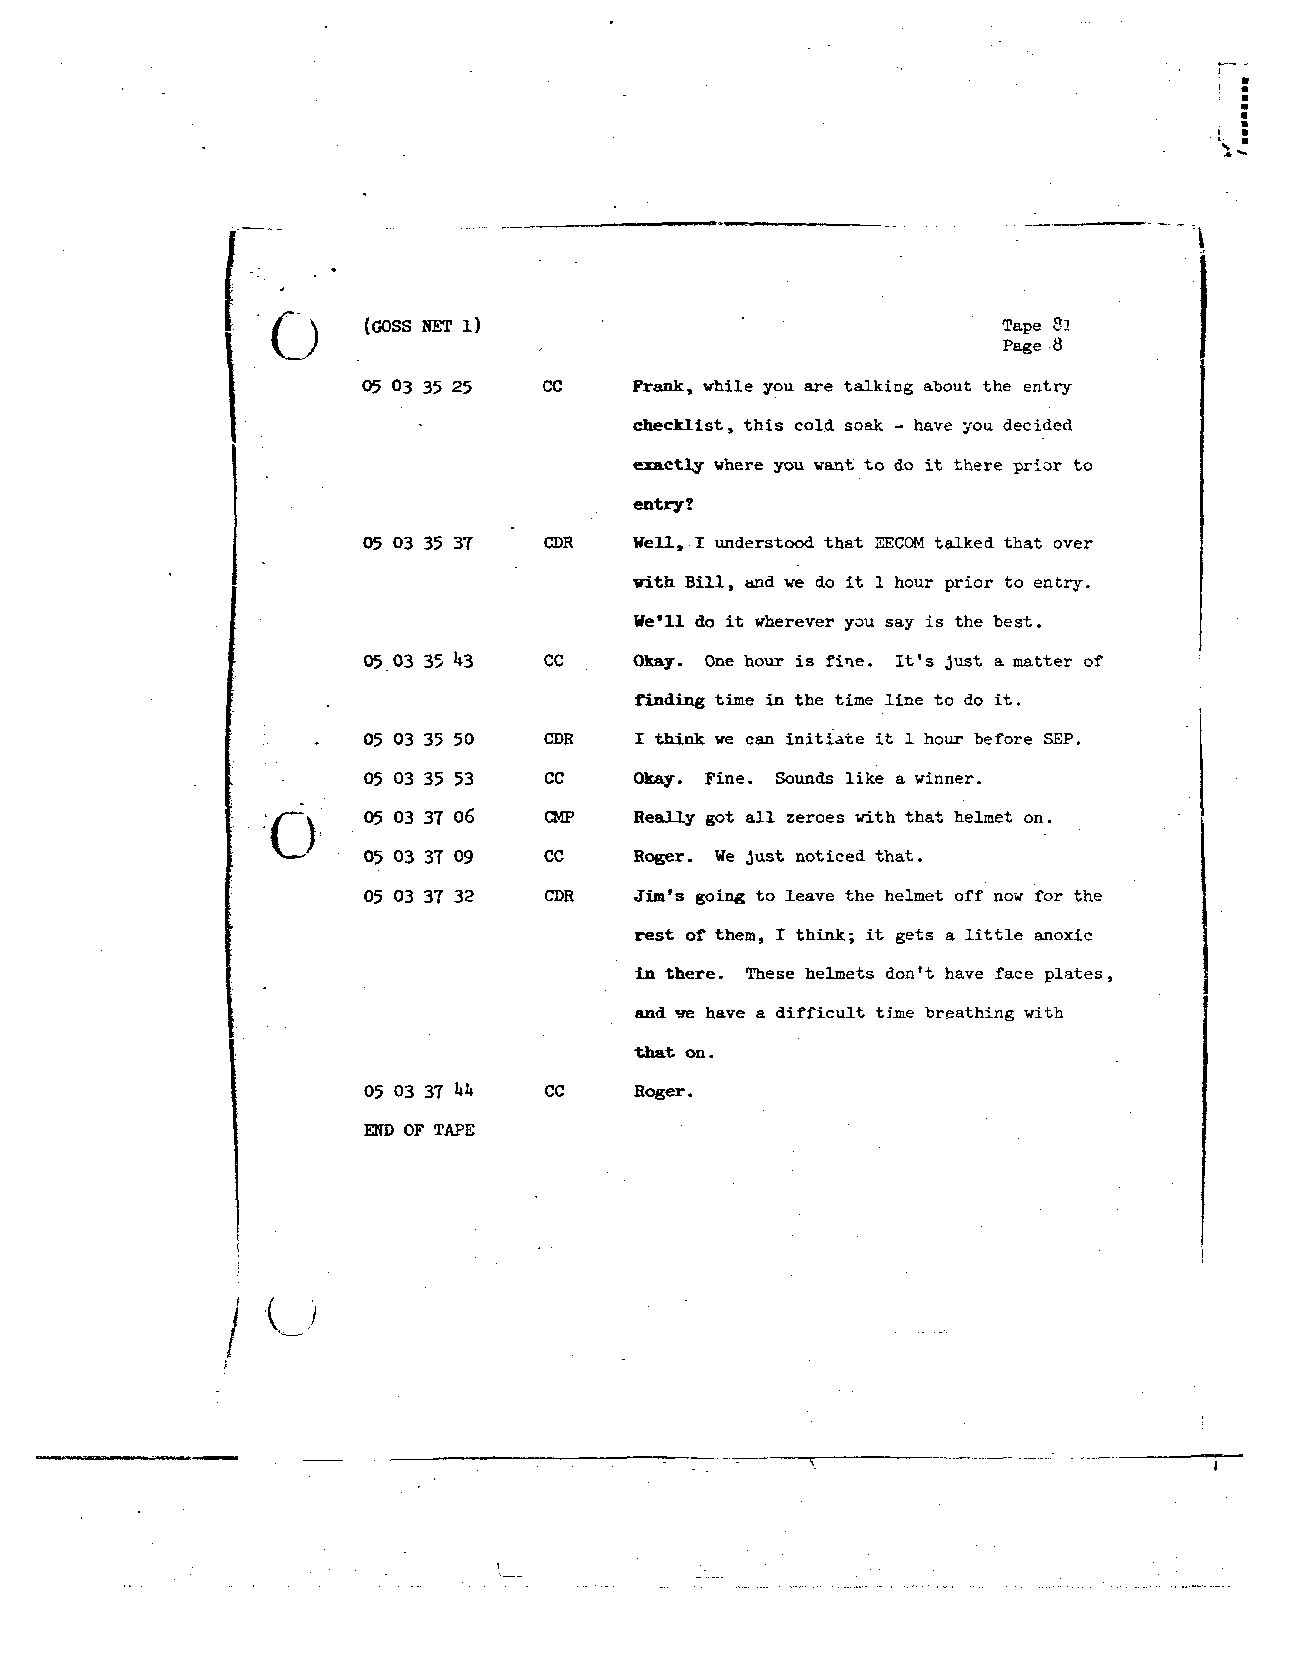 Page 676 of Apollo 8’s original transcript